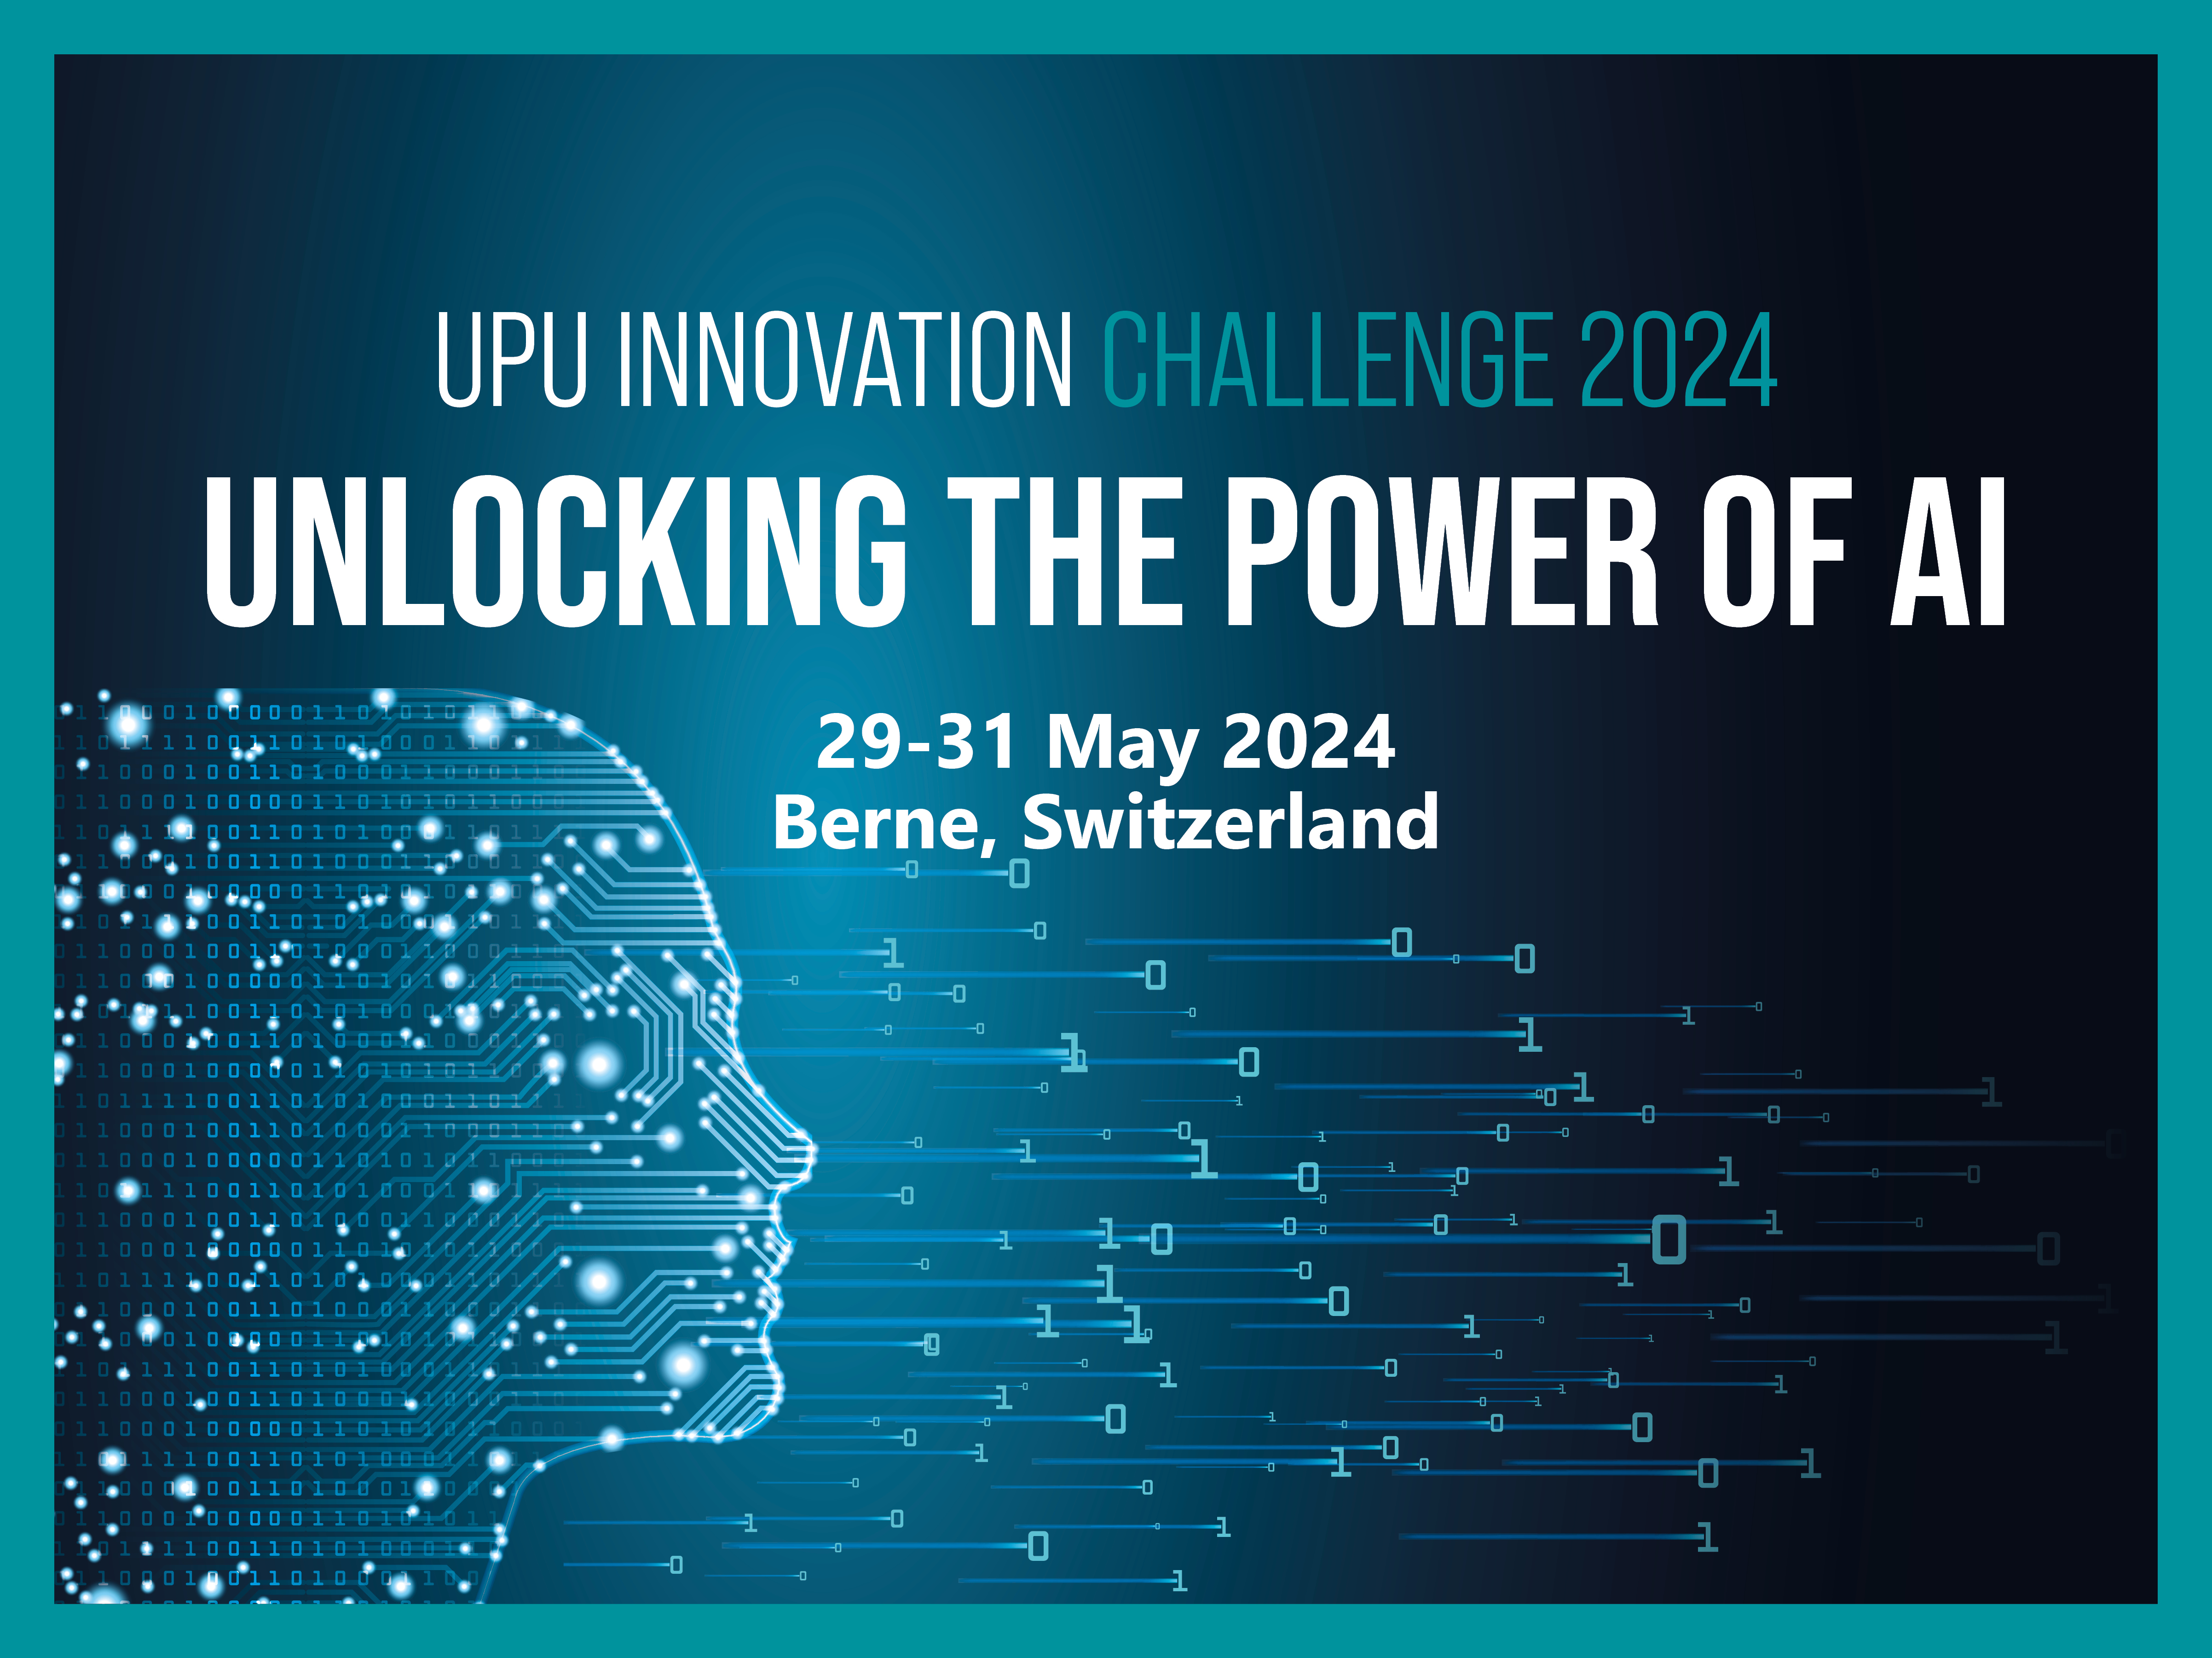 UPU Innovation Challenge 2024